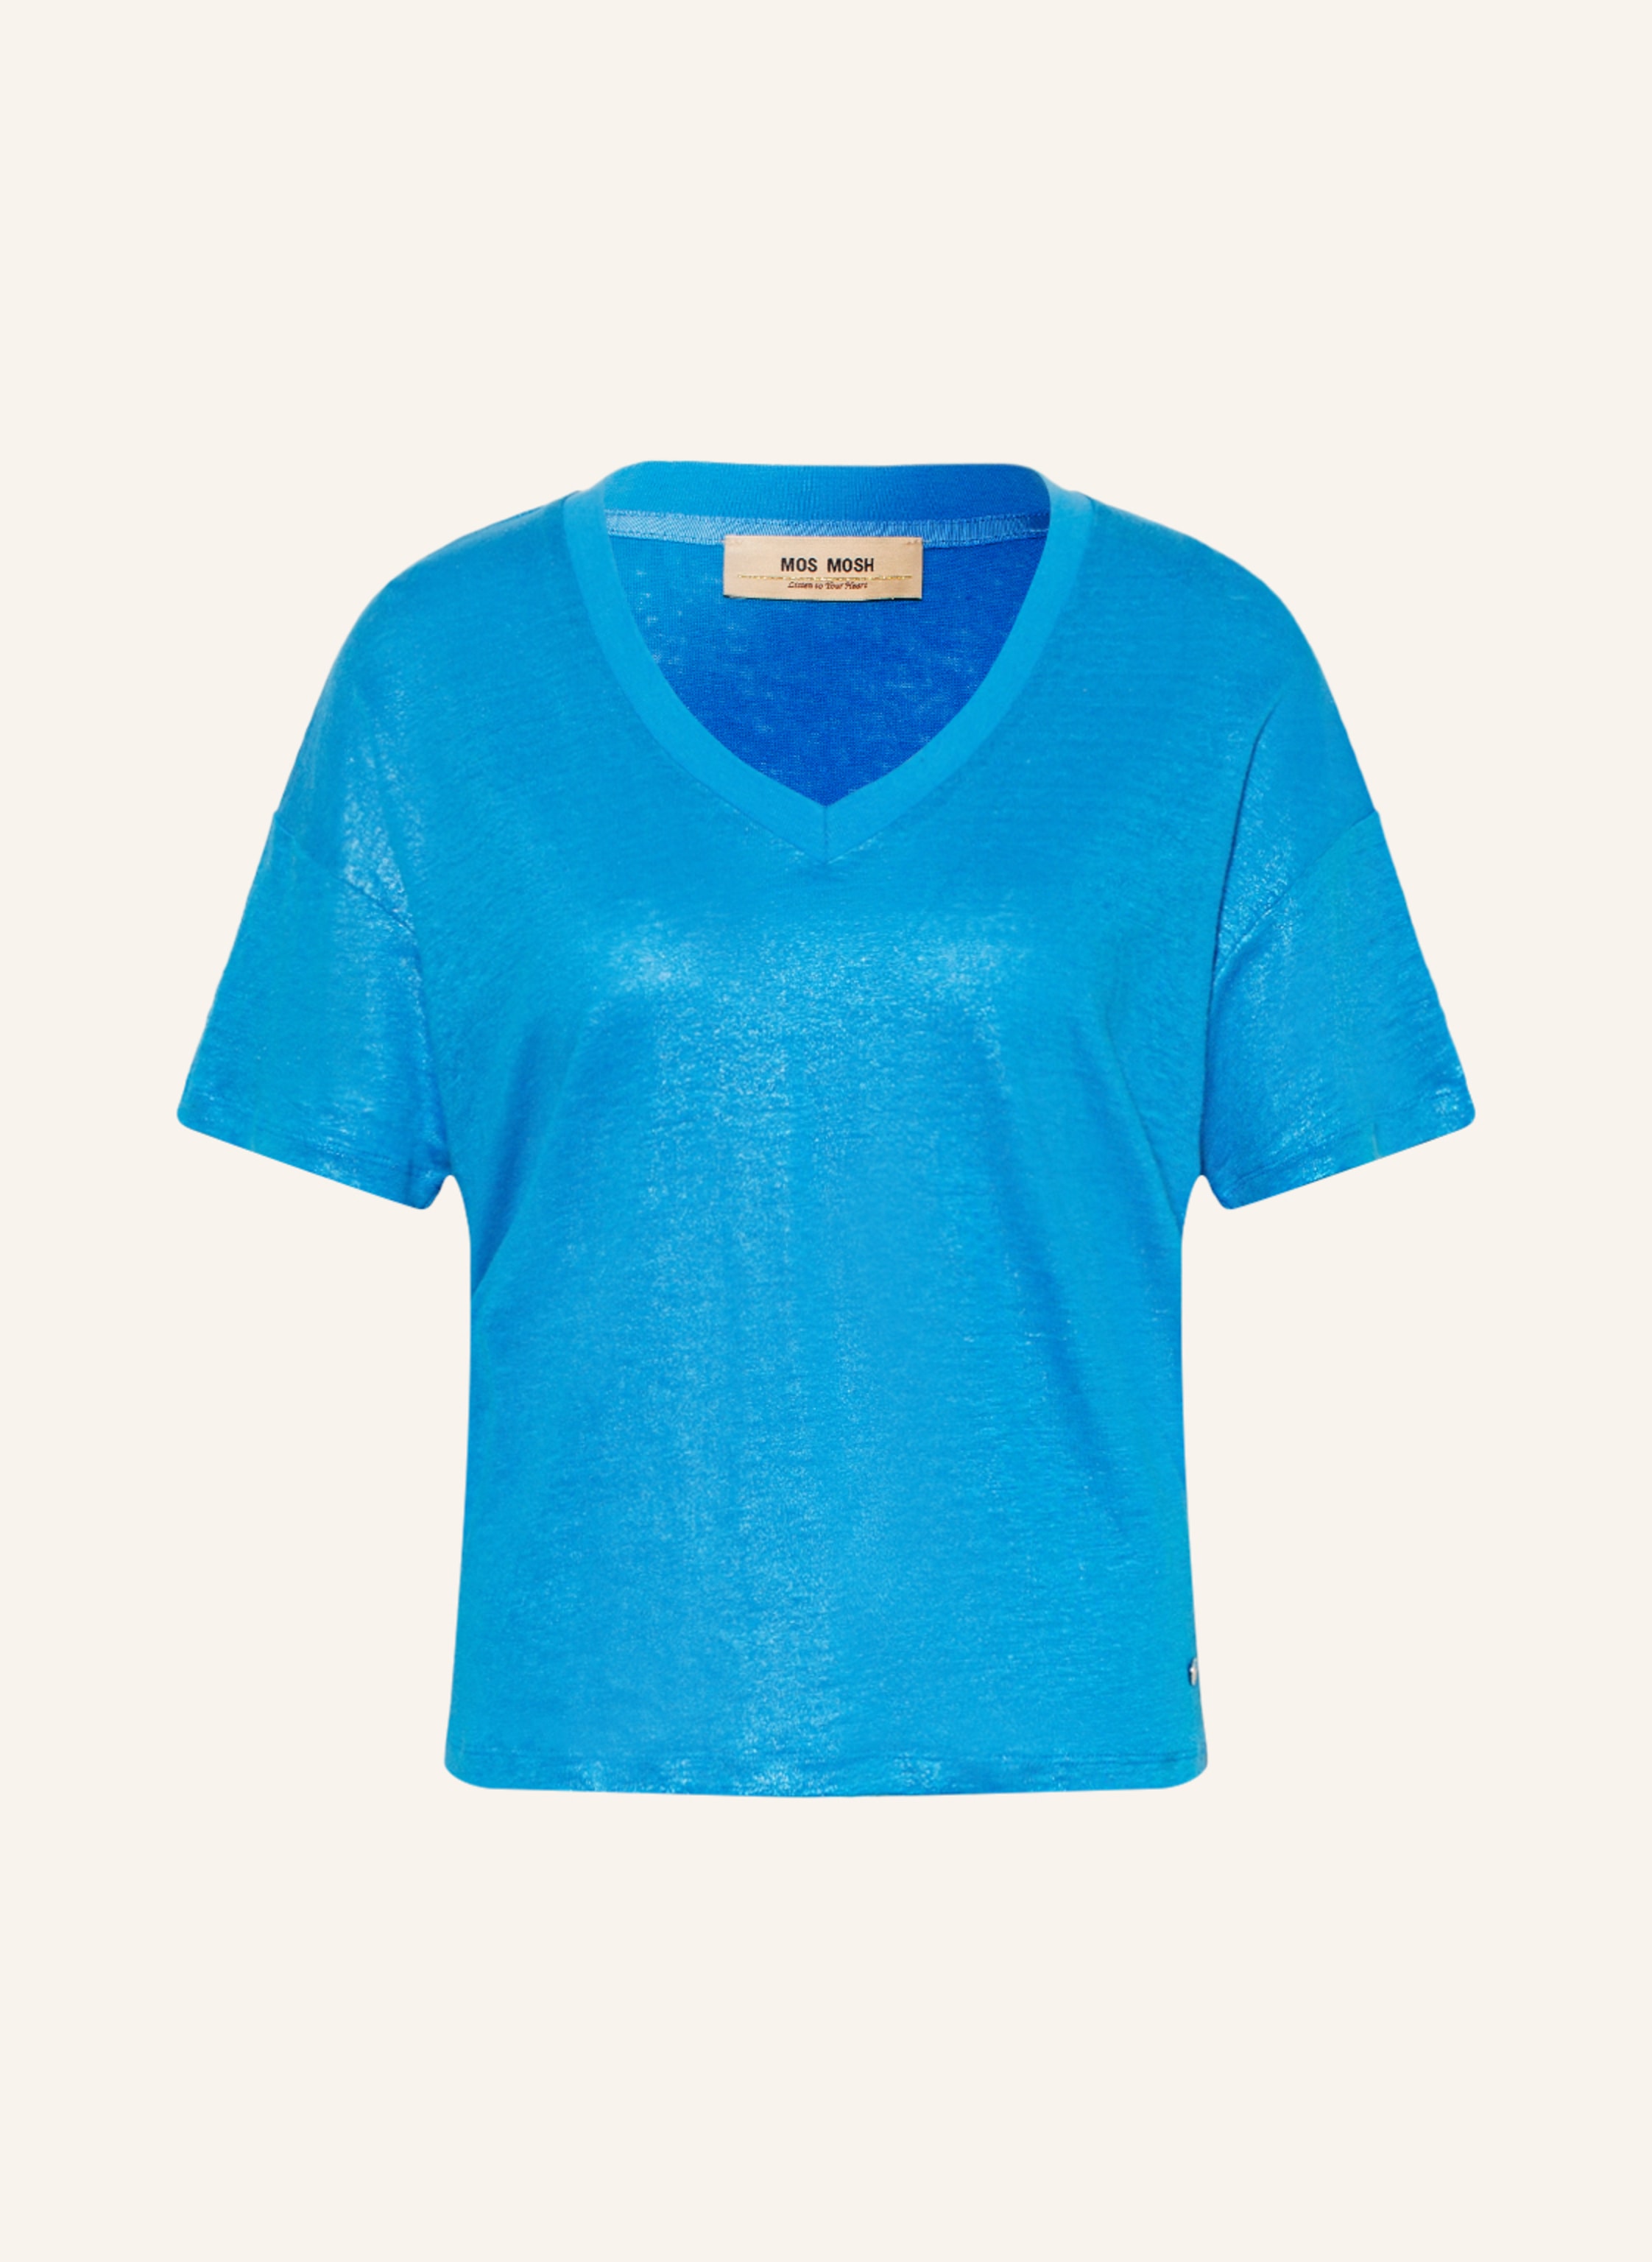 MOS MOSH T-shirt CASA made of linen in blue | Breuninger